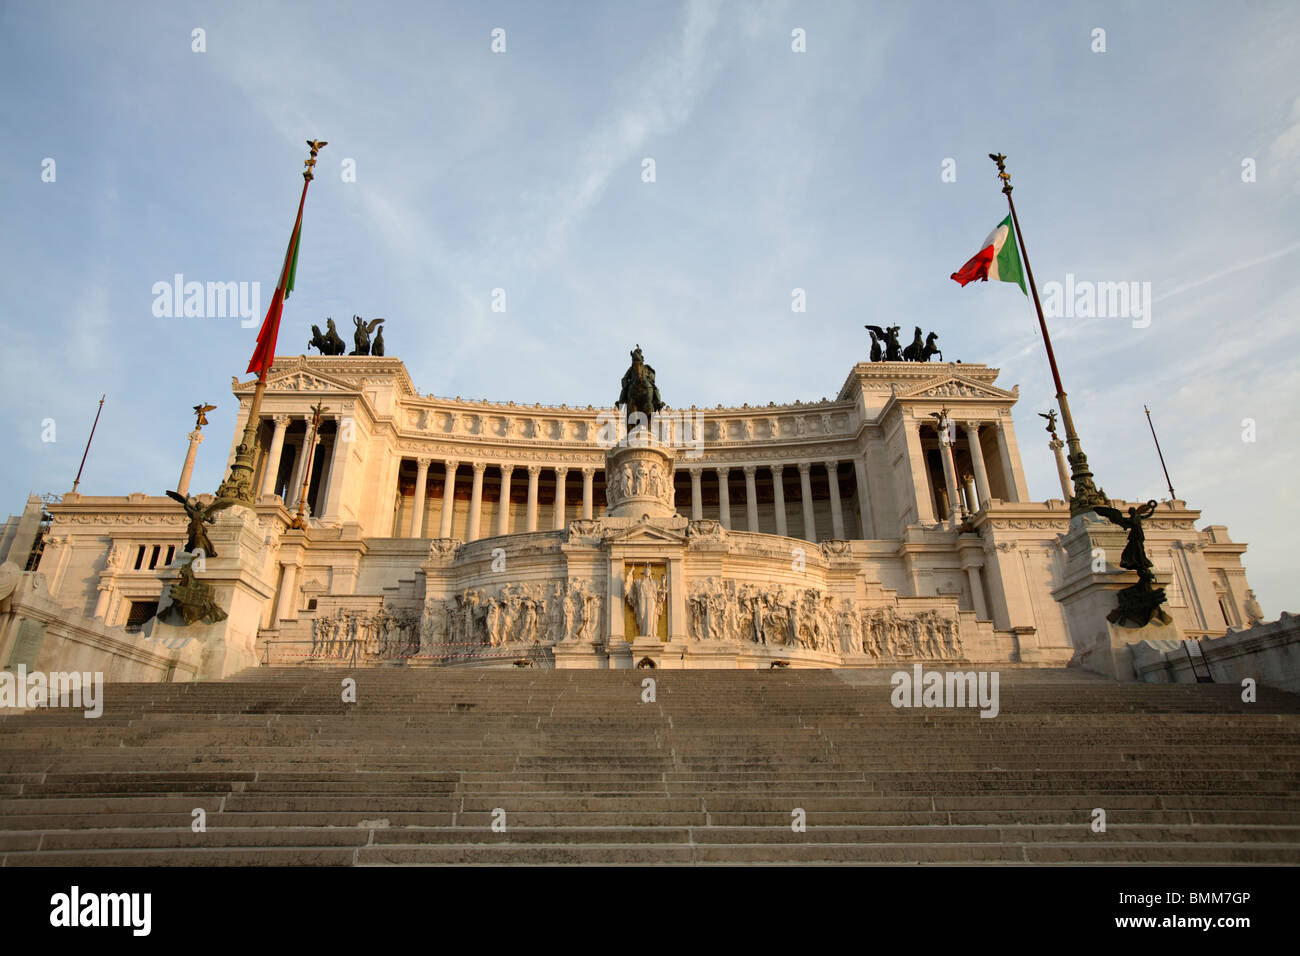 L'autel de la patrie ou Vittoriano, Rome, Italie Banque D'Images